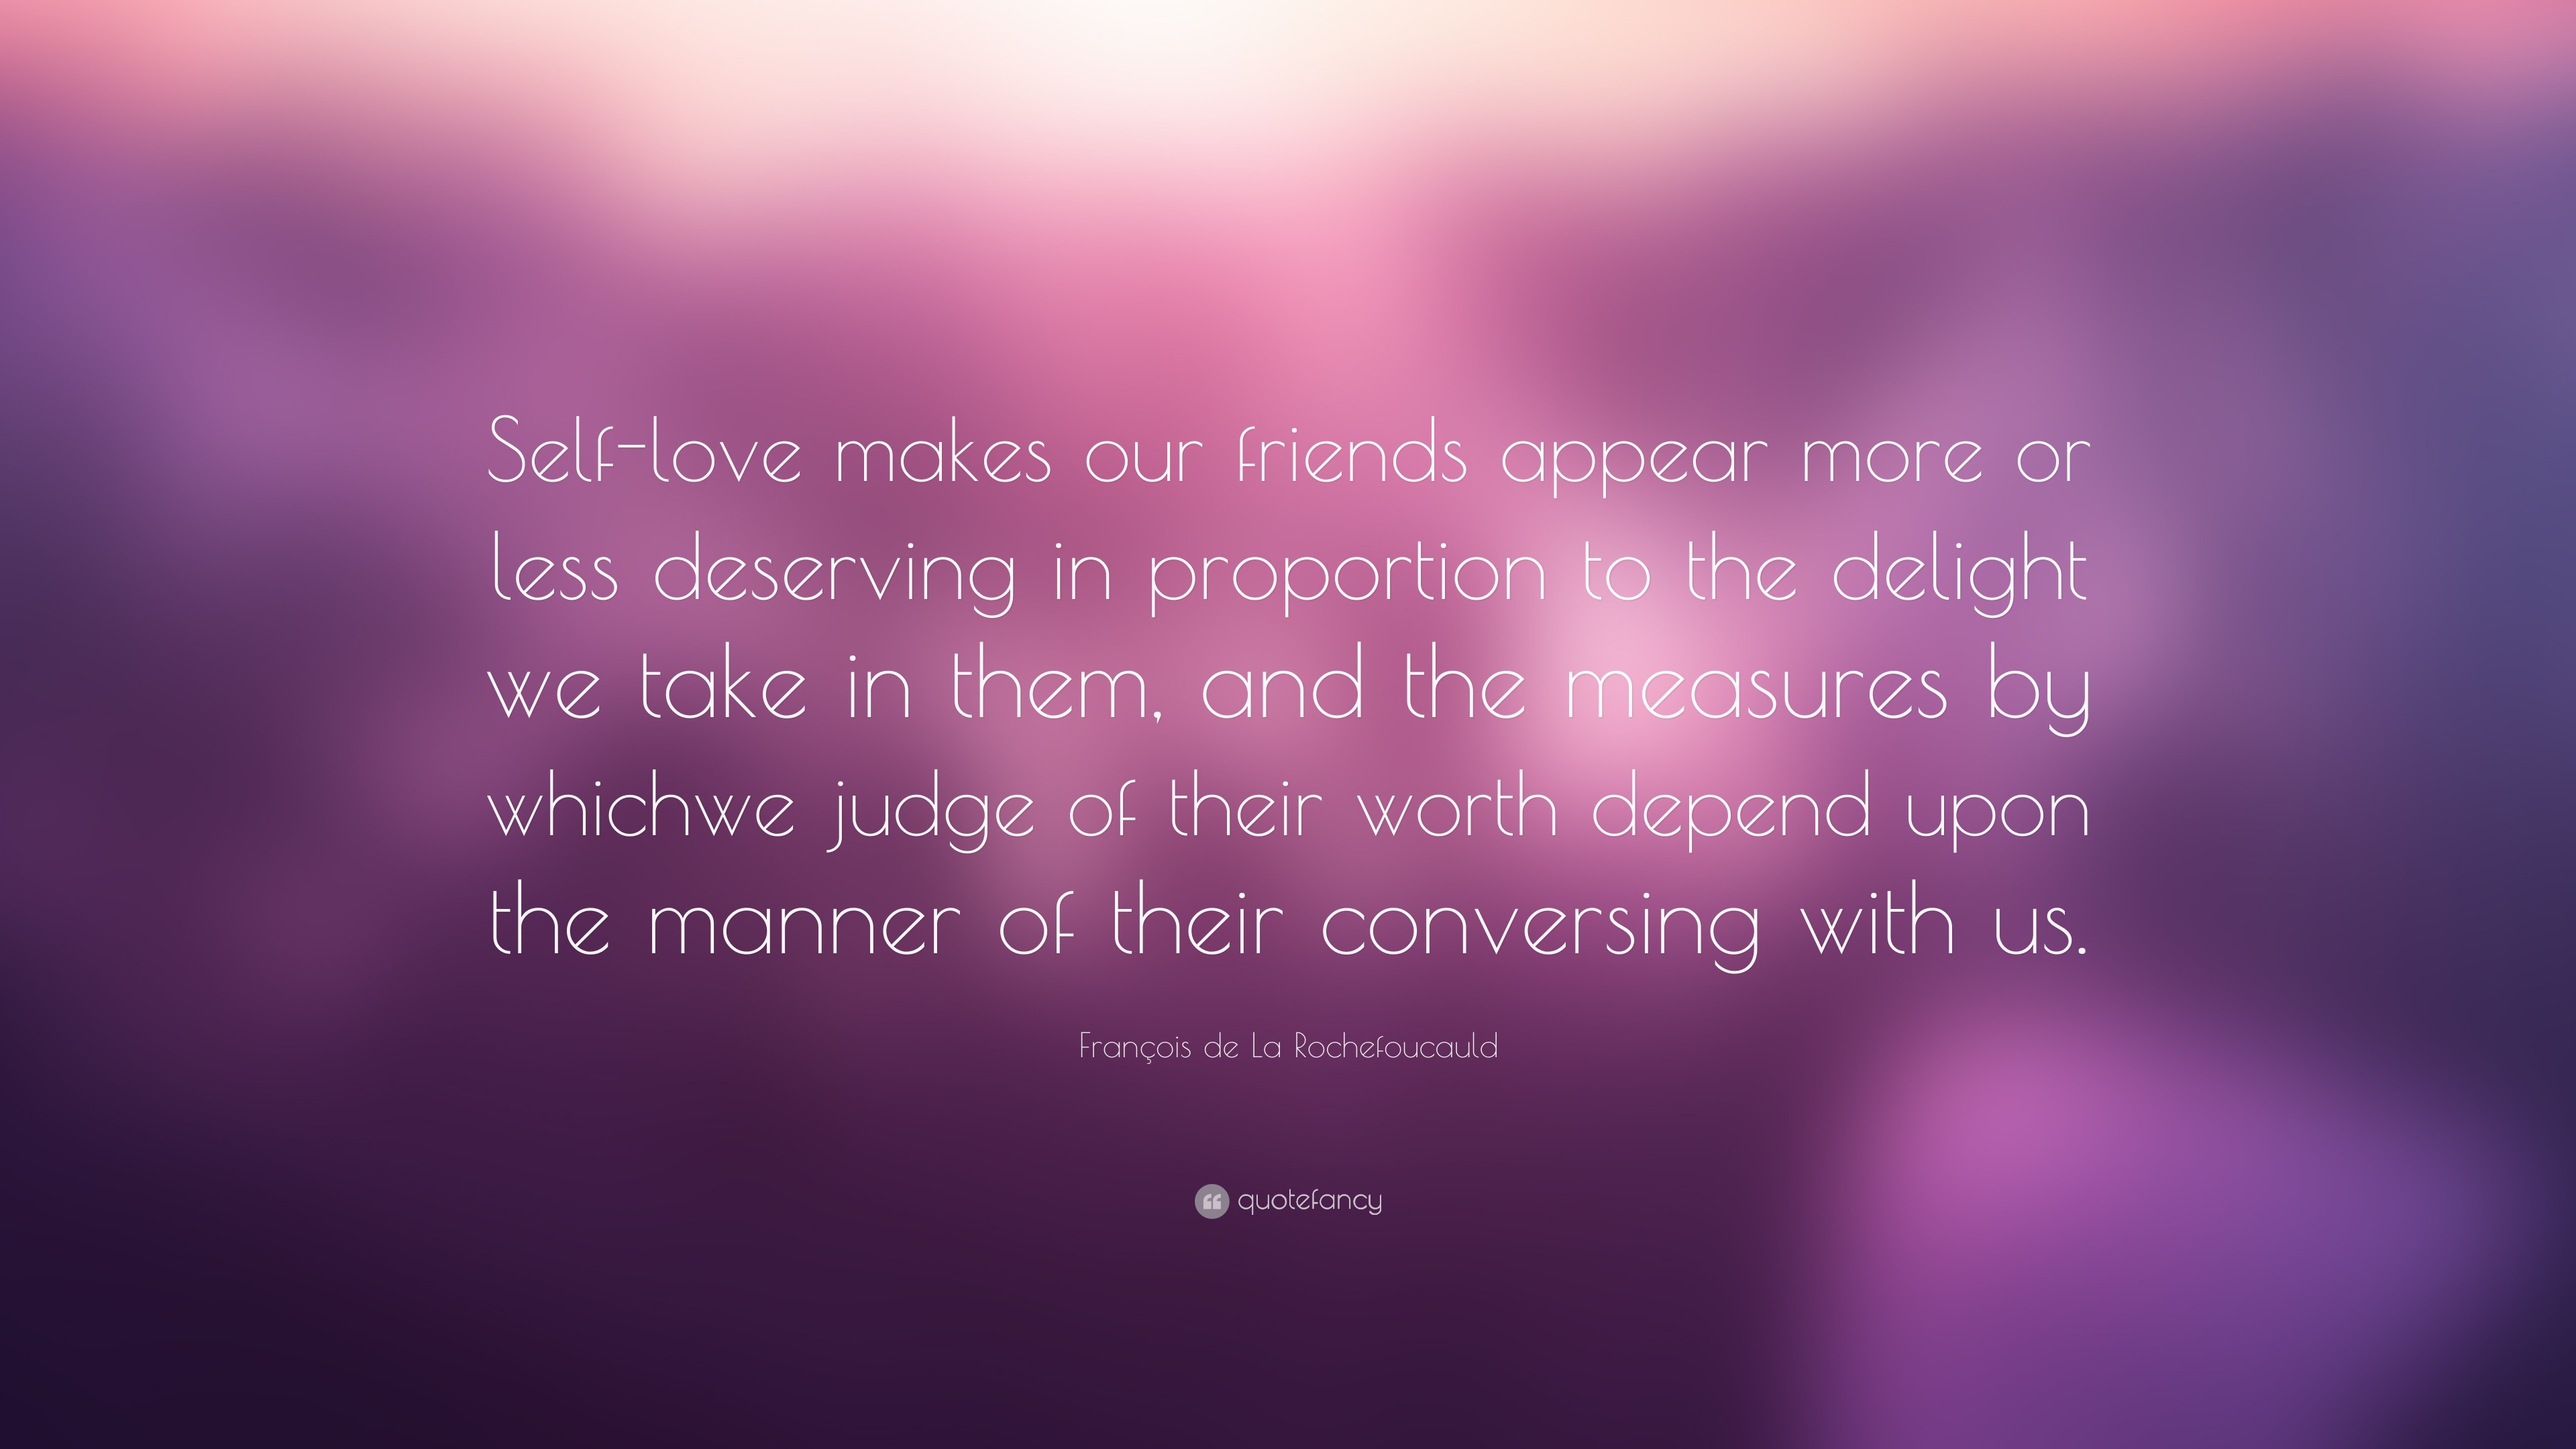 François de La Rochefoucauld Quote: “Self-love makes our friends appear ...